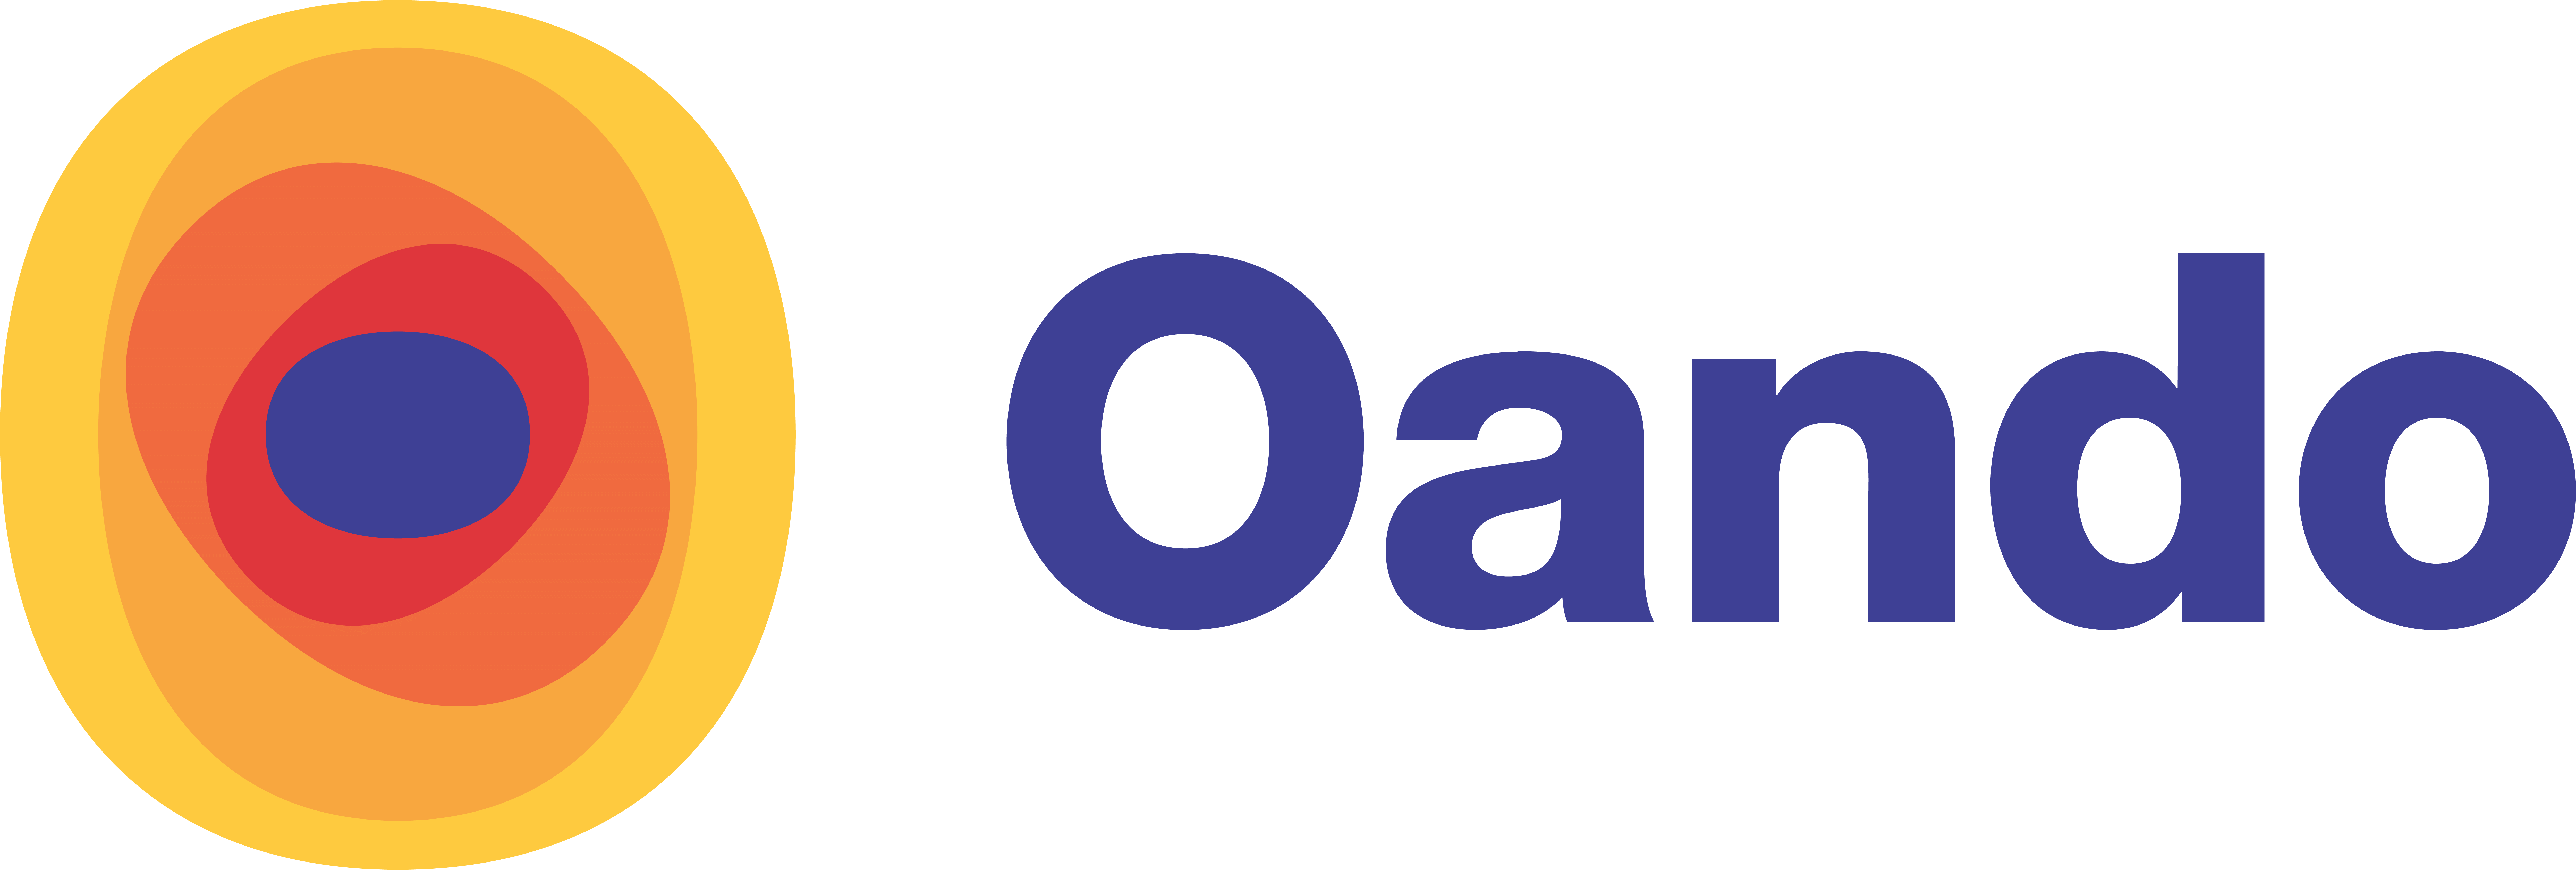 Oando_Logo